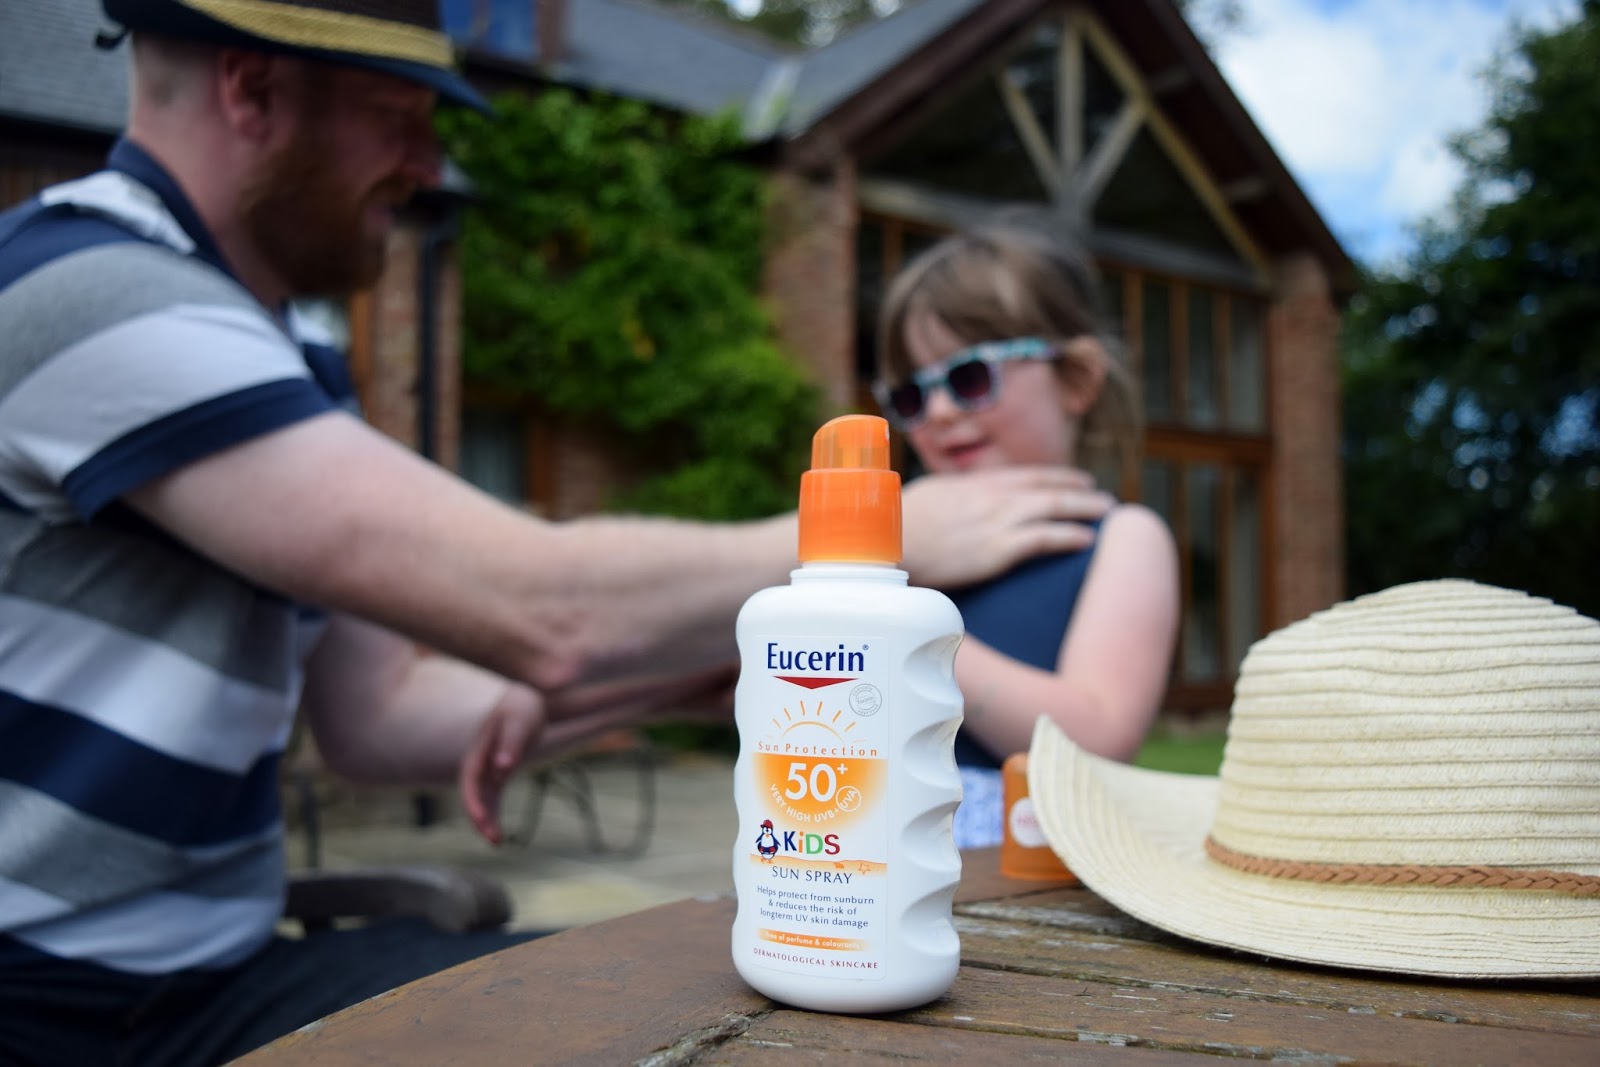 Eucerin Sun Protection Kids Sun Spray SPF 50+ 200ml ปกป้องและบรรเทาผิวบอบบางของเด็ก และลดความเสี่ยงของความเสียหายที่ผิวหนังในระยะยาว